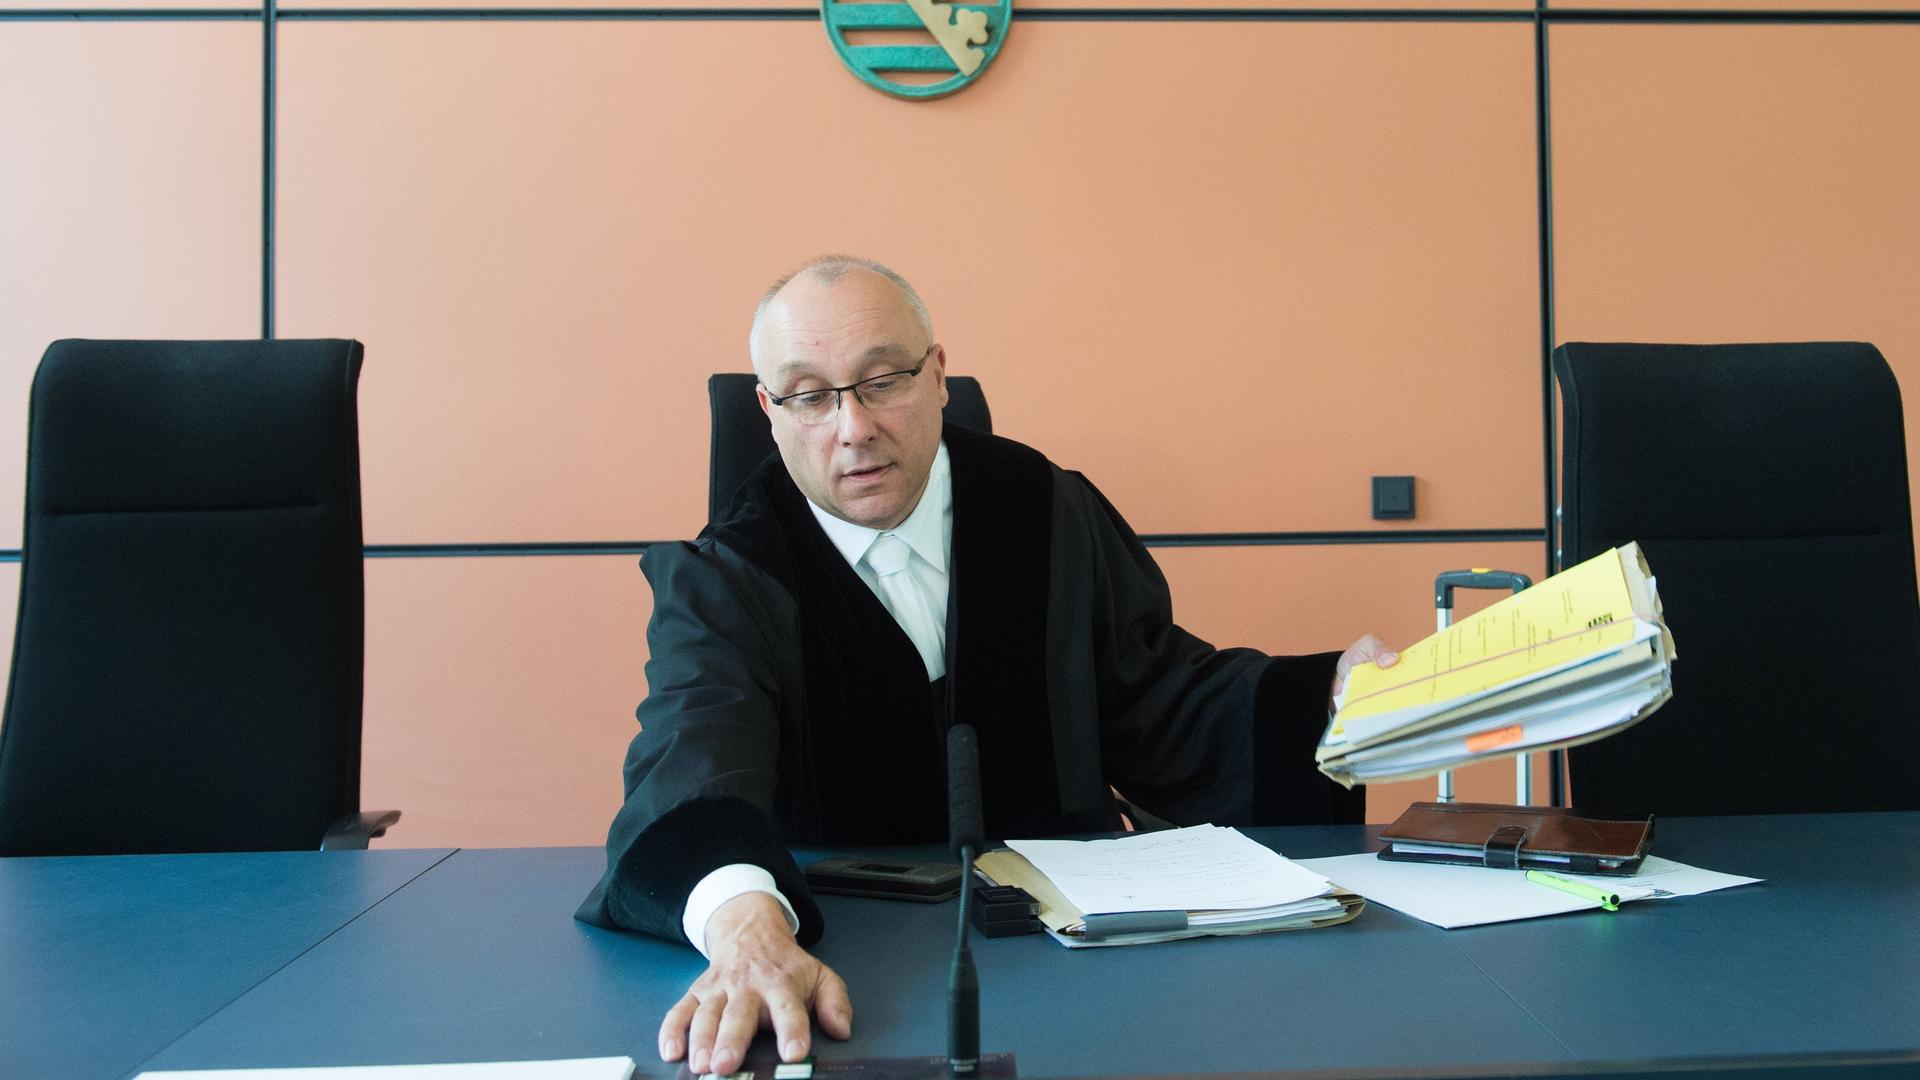 Der Richter Jens Maier sitzt am 10.06.2016 vor Beginn einer mündlichen Verhandlung im Landgericht in Dresden (Sachsen) auf seinem Platz. 